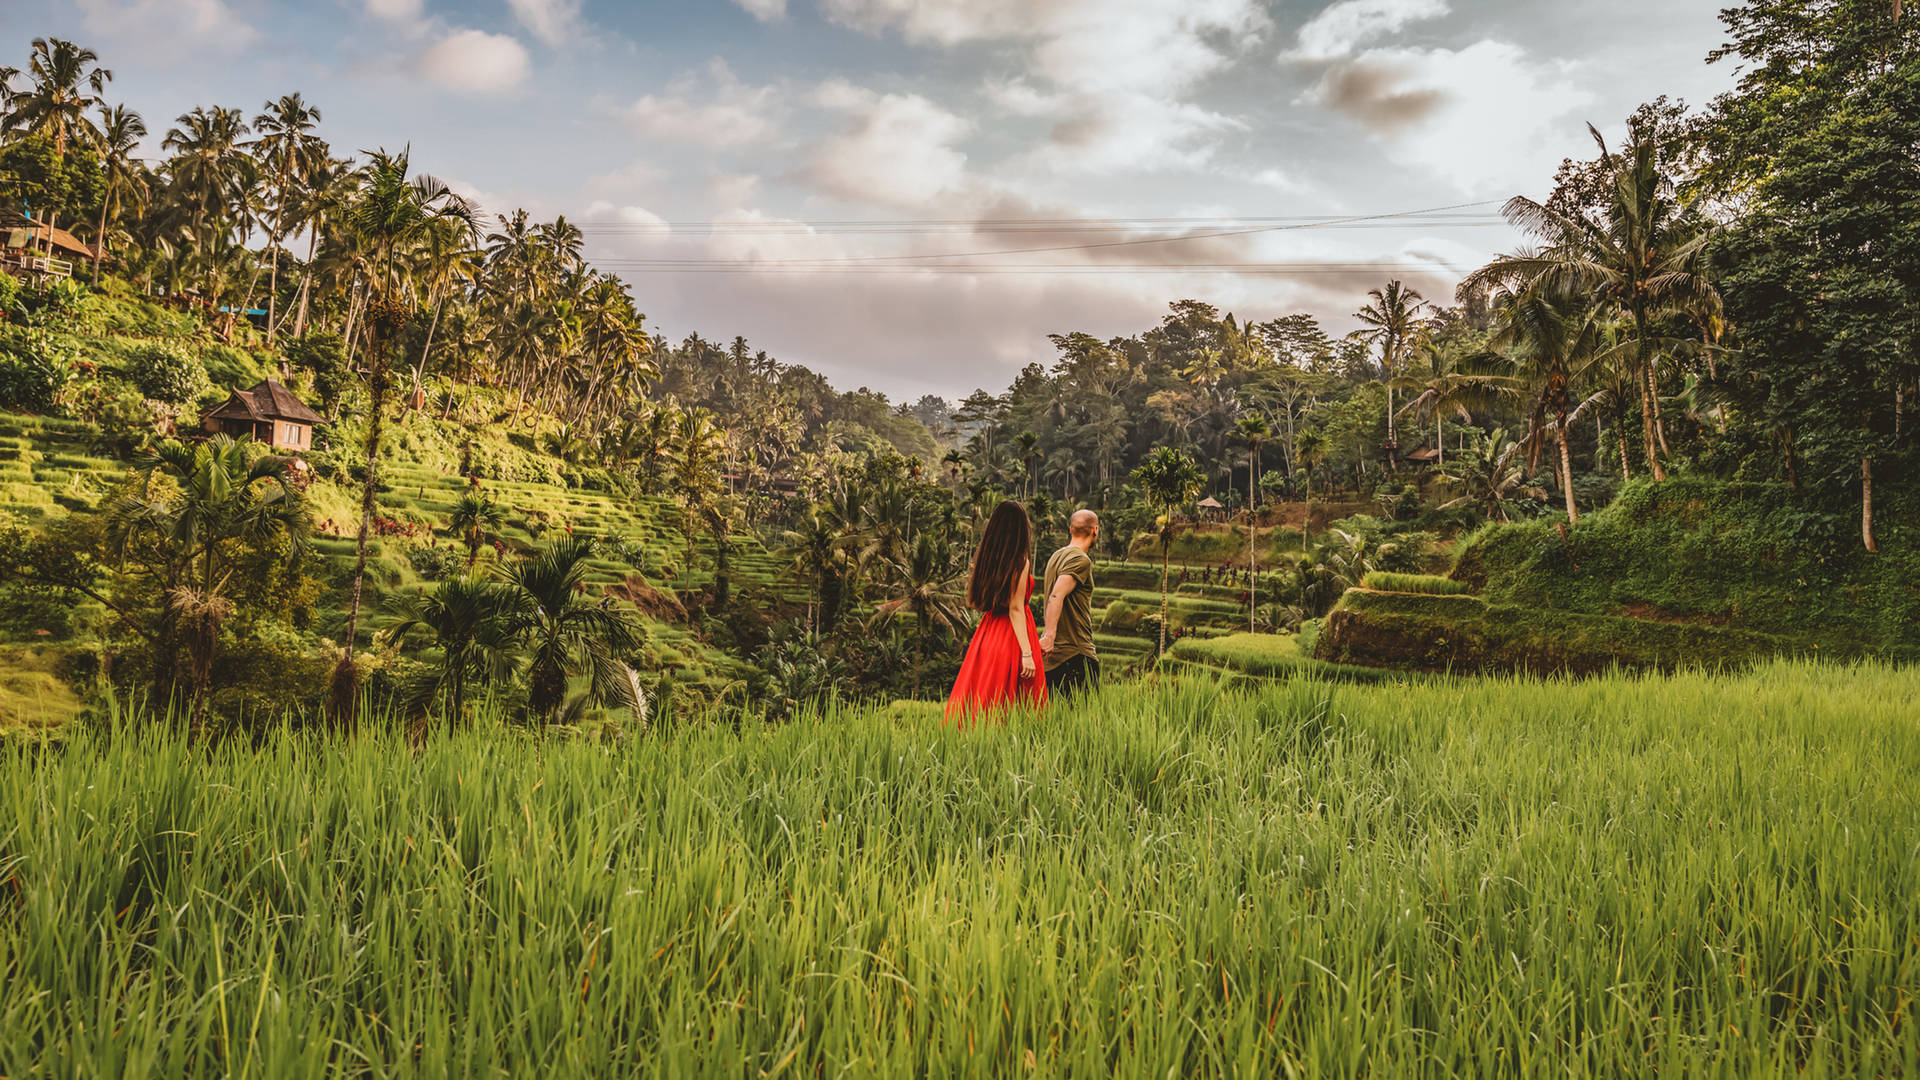 Emerald green rice paddies in Bali